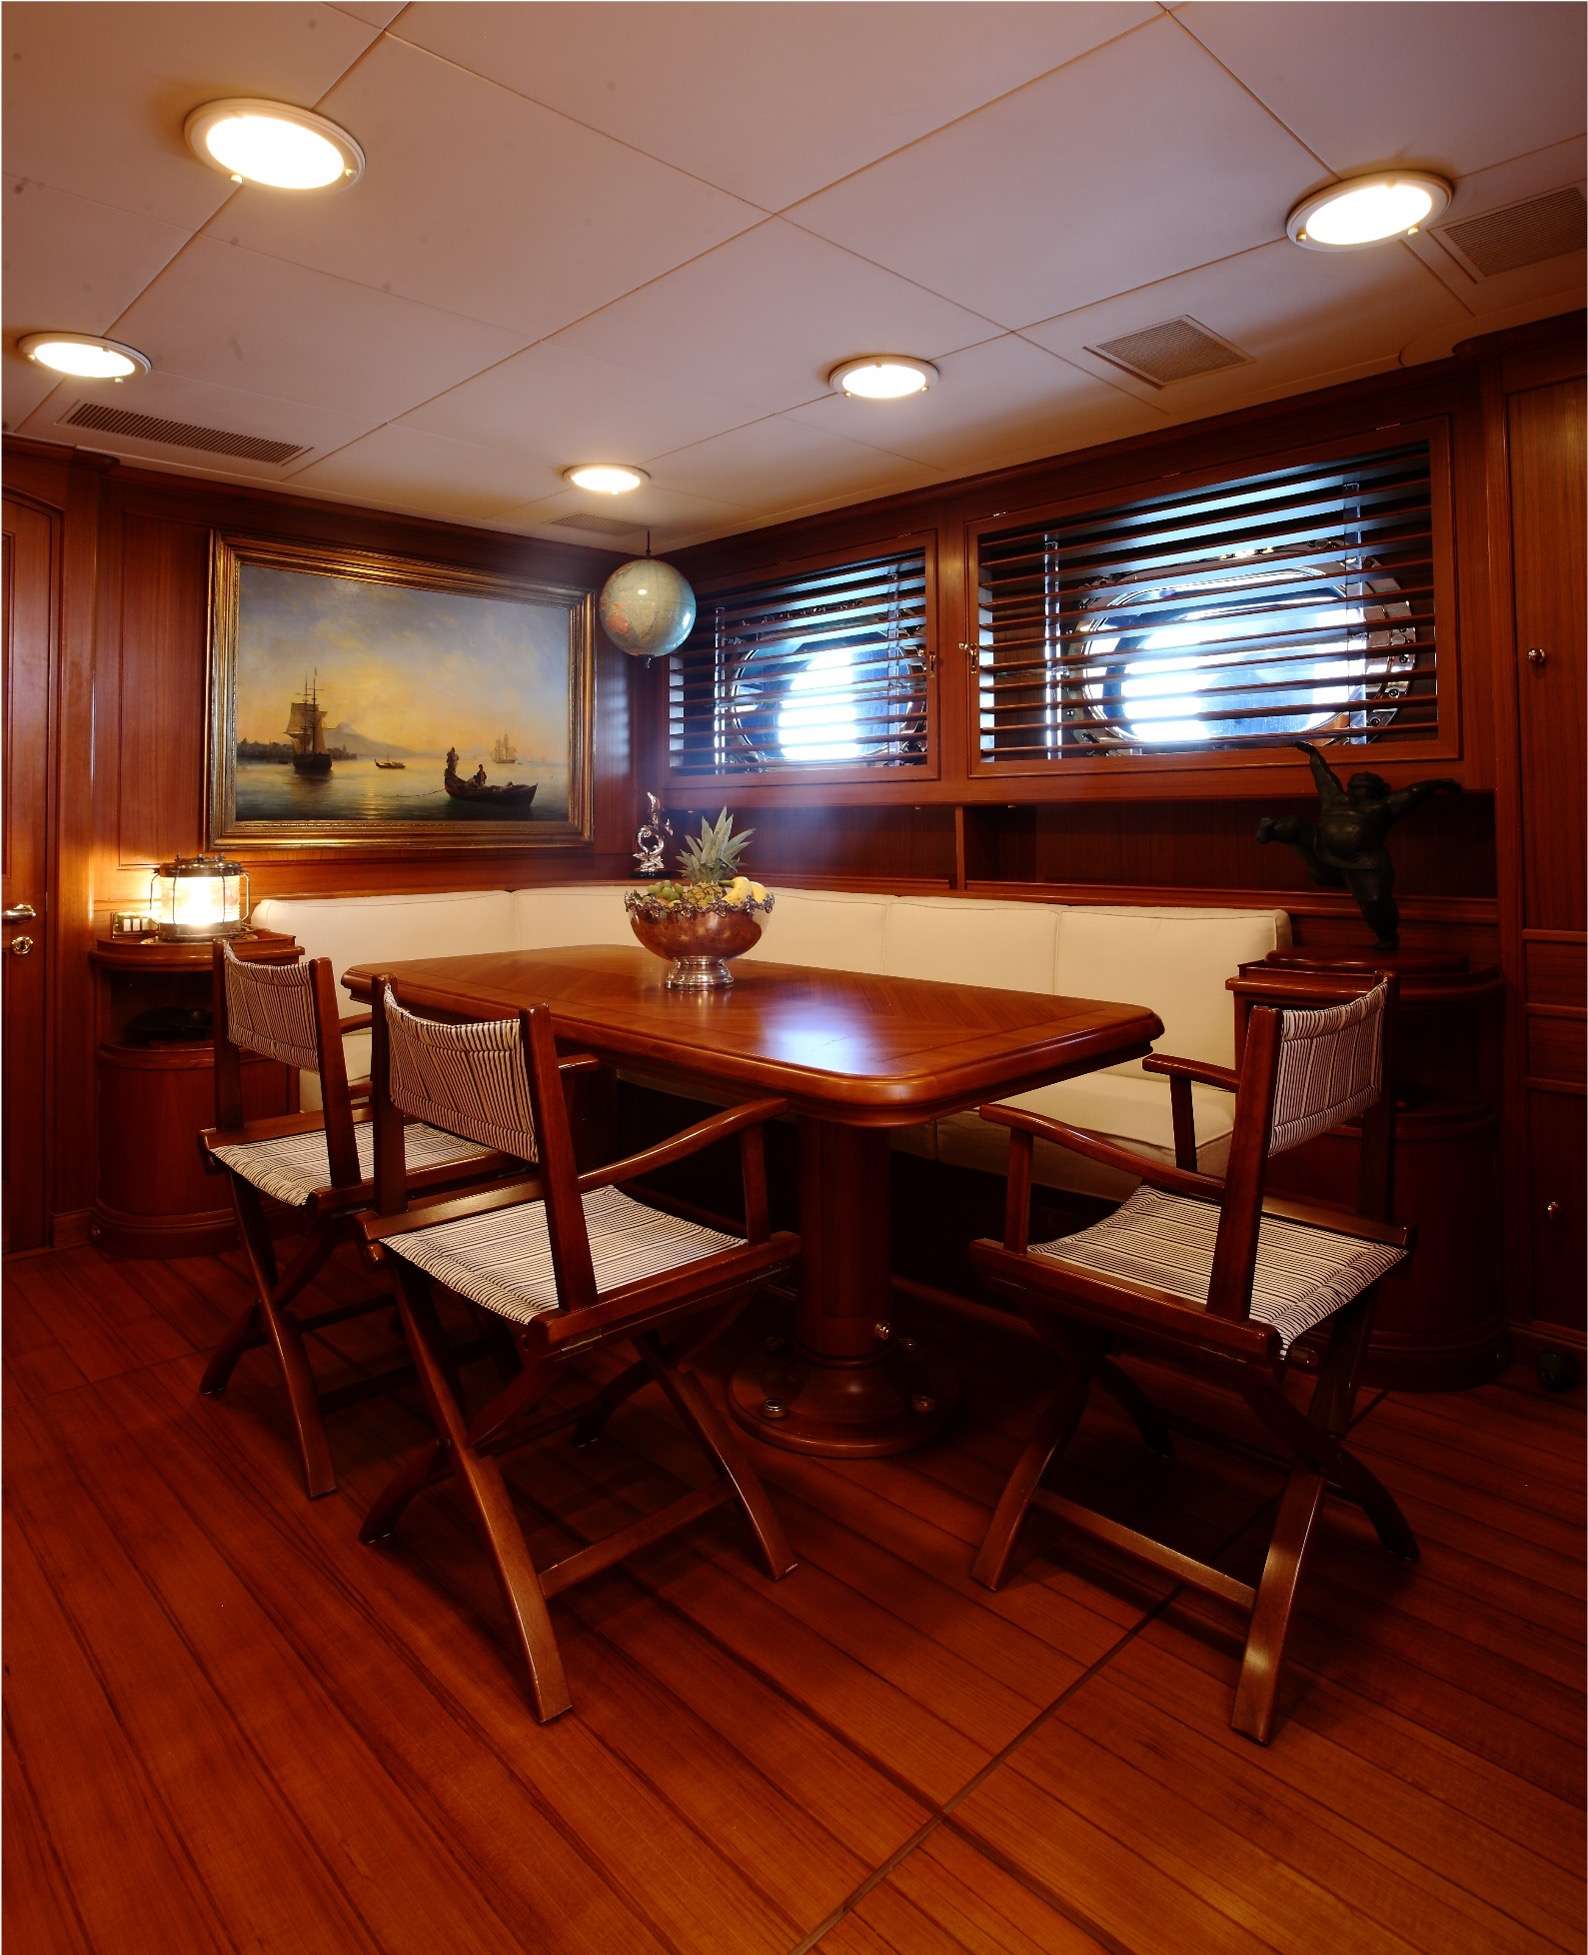 HERITAGE M - Luxury yacht charter France & Boat hire in Fr. Riviera & Tyrrhenian Sea 3